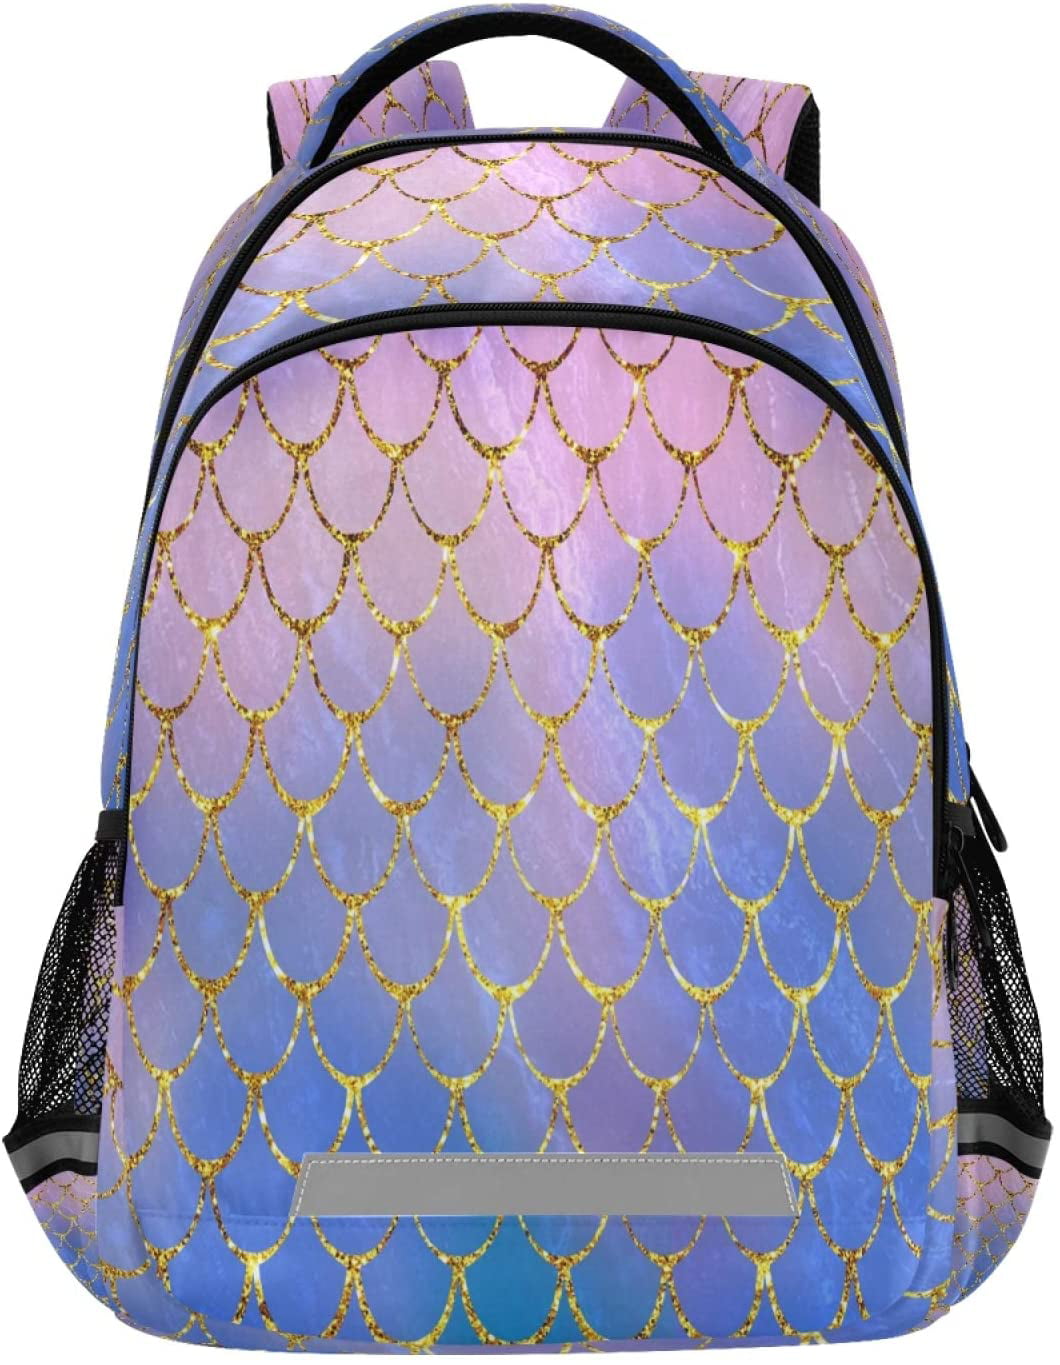 Mermaid Scales Print Laptop Backpack High School Bookbag Casual Travel Daypack